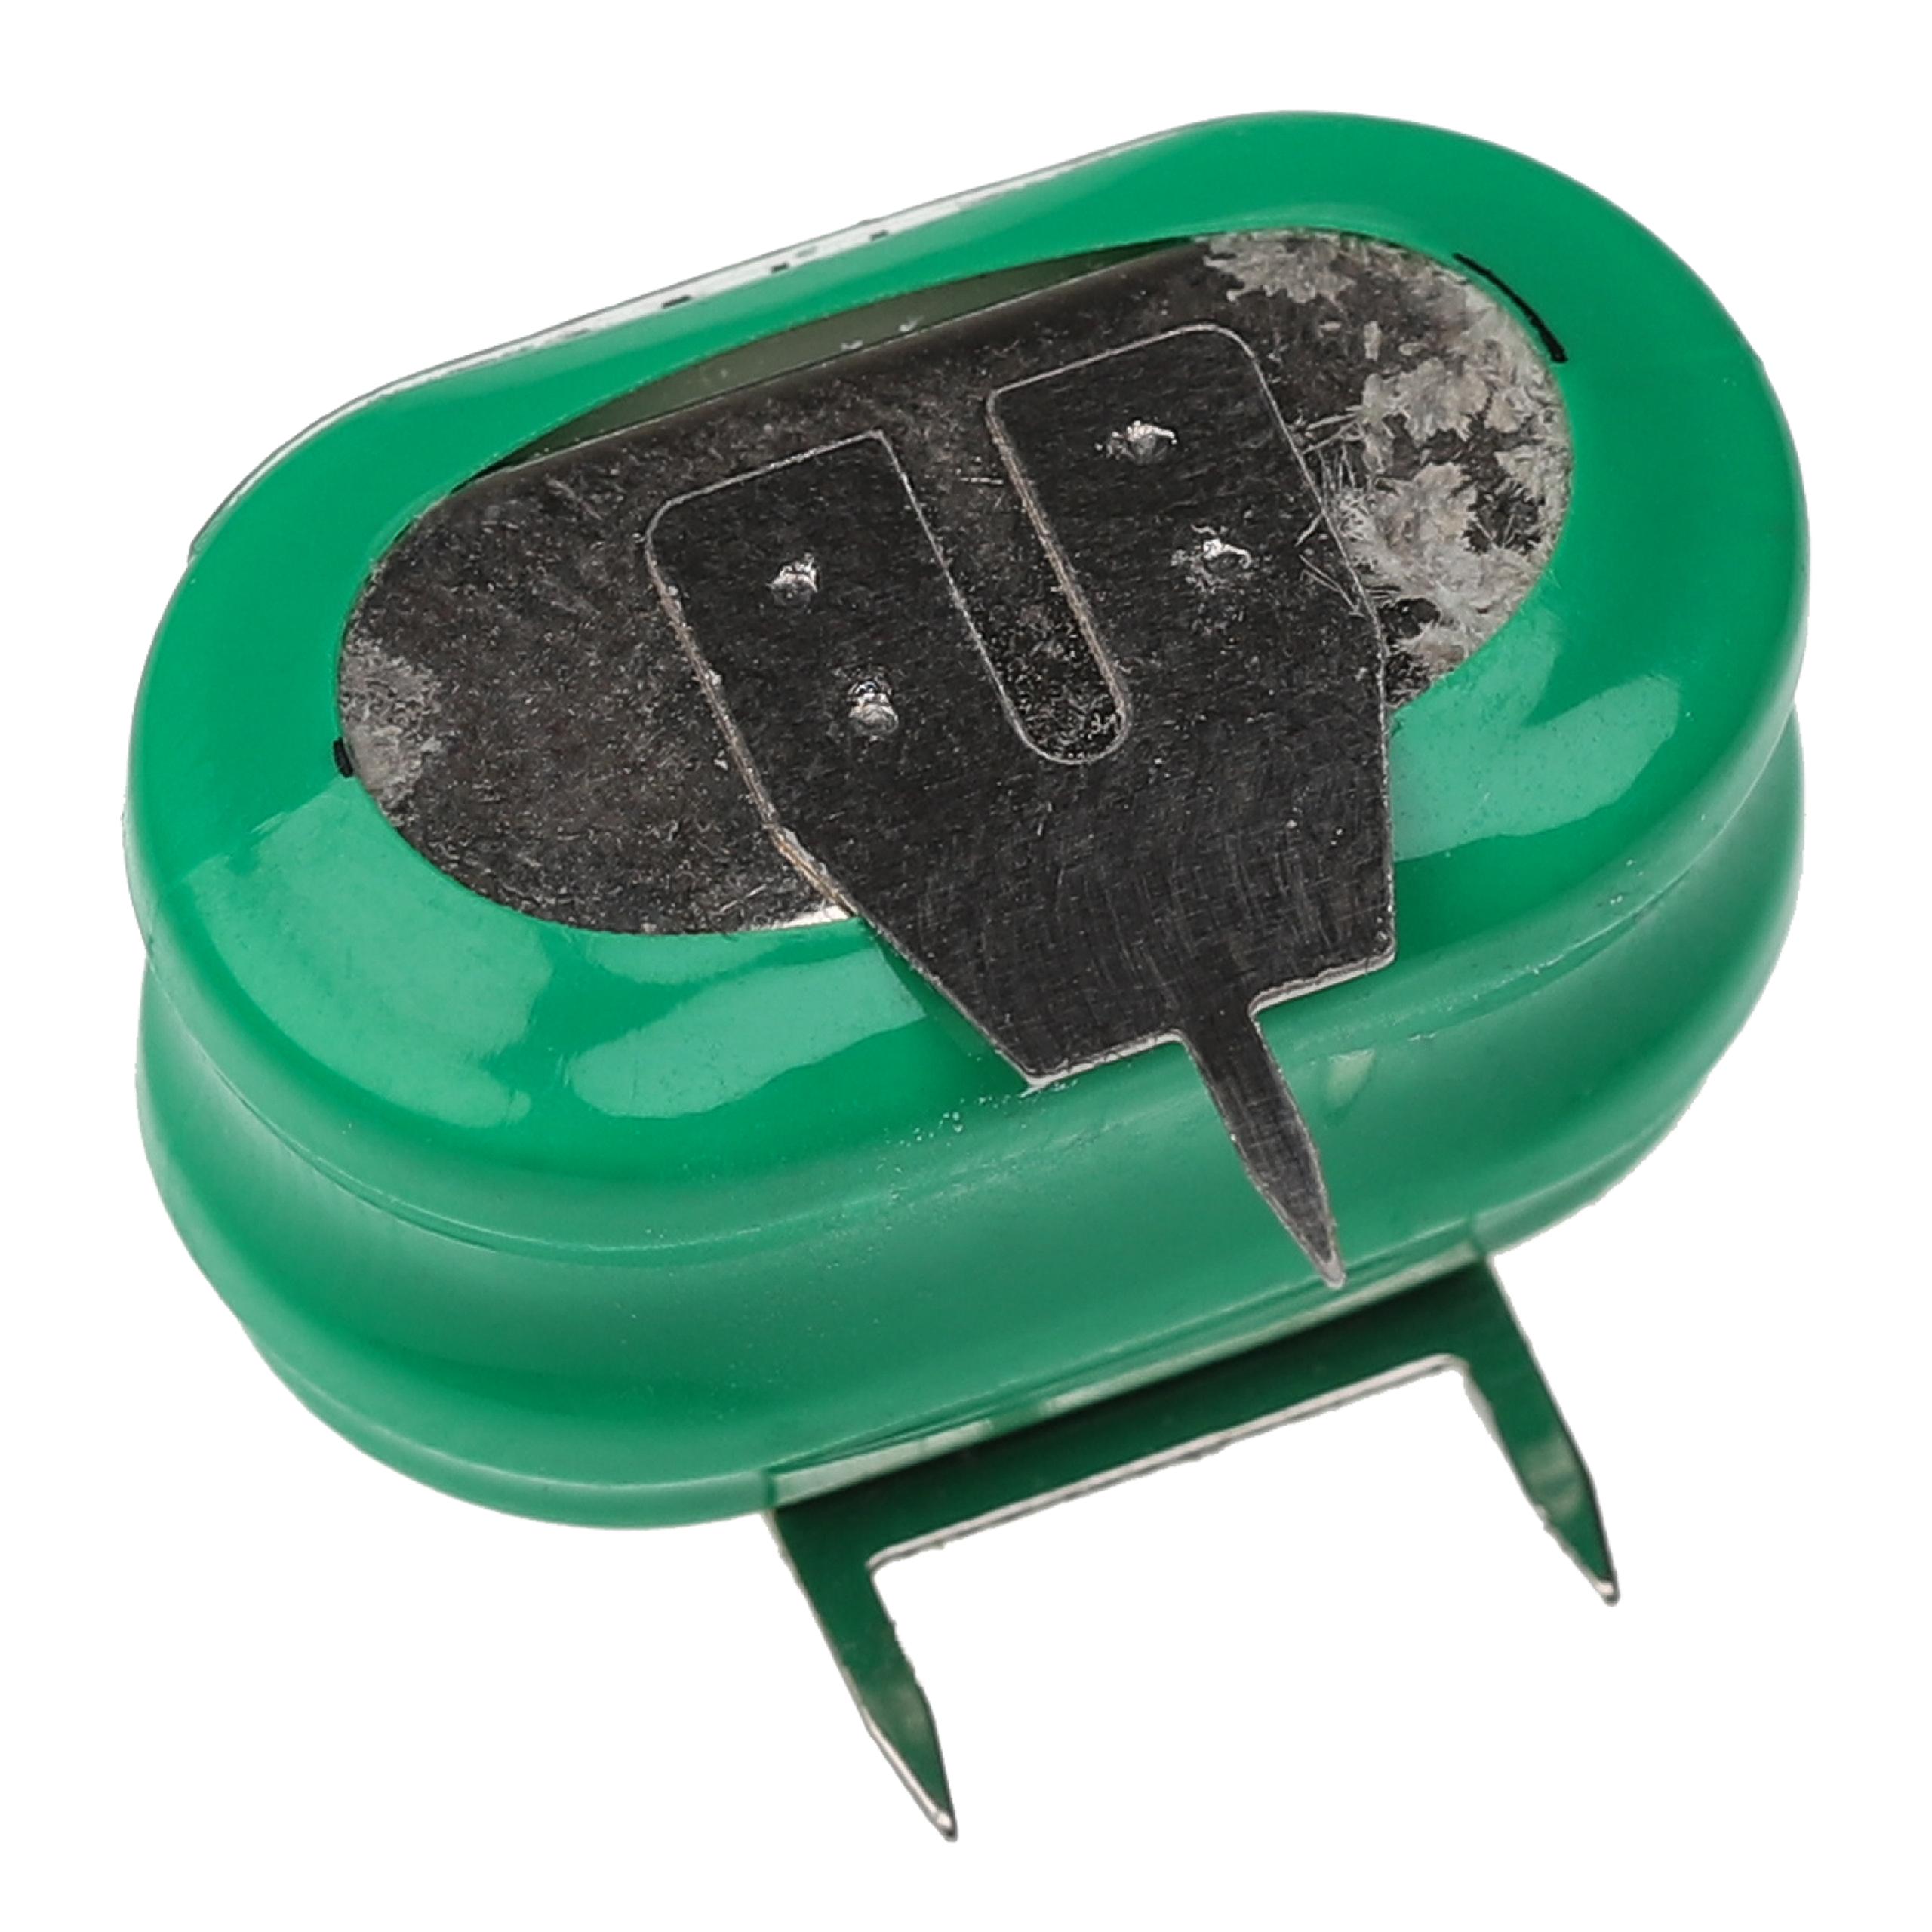 Batteria a bottone (2x cella) tipo 2/V150H 3 pin sostituisce 2/V150H per modellismo, luci solari ecc. 